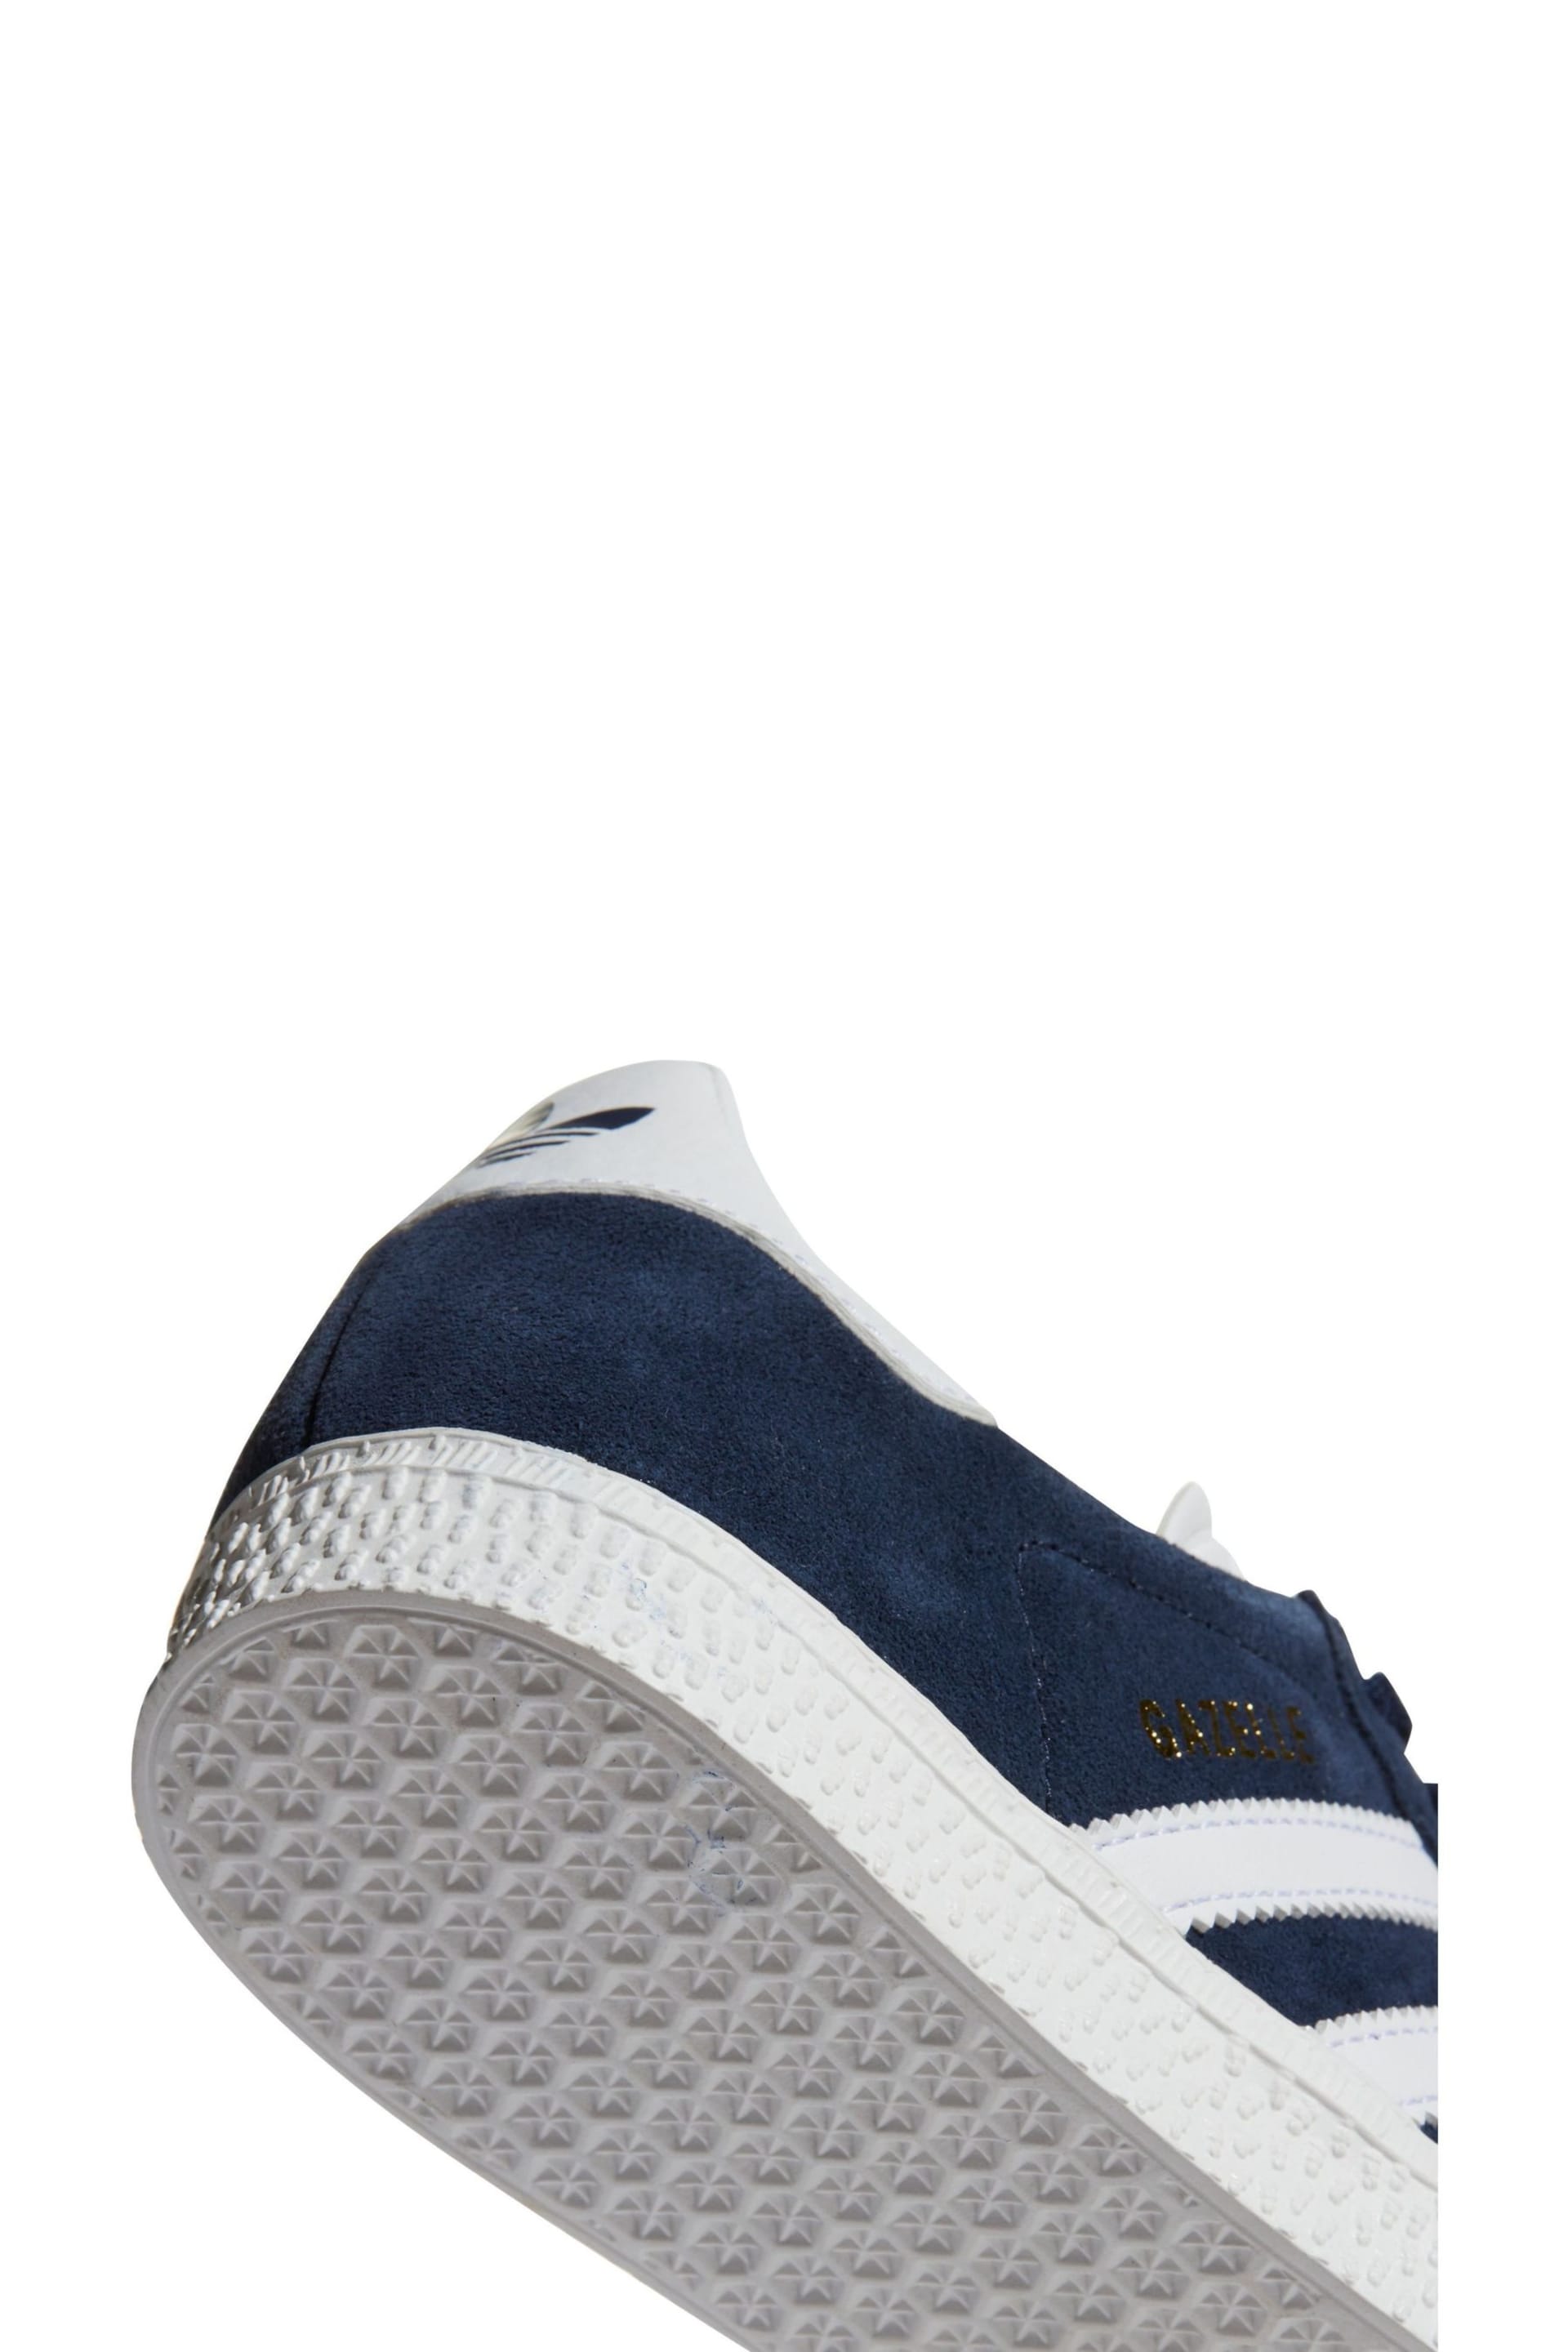 adidas Navy/White Gazelle Shoes - Image 9 of 9